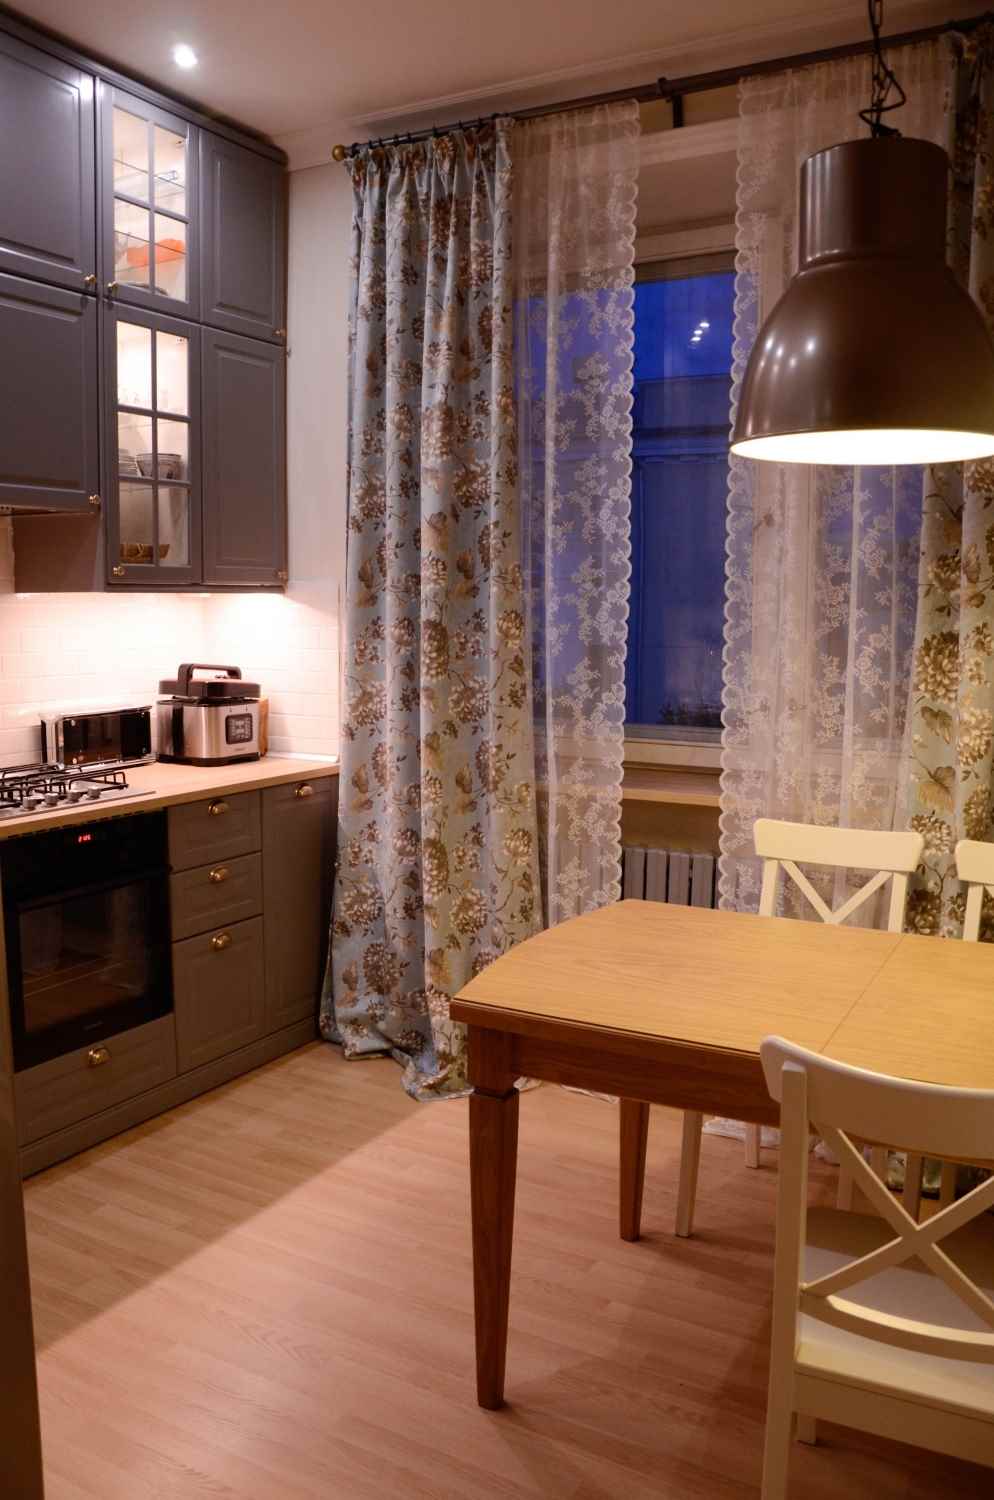 Un esempio di una cucina in stile luminoso di 10 mq. serie n 44